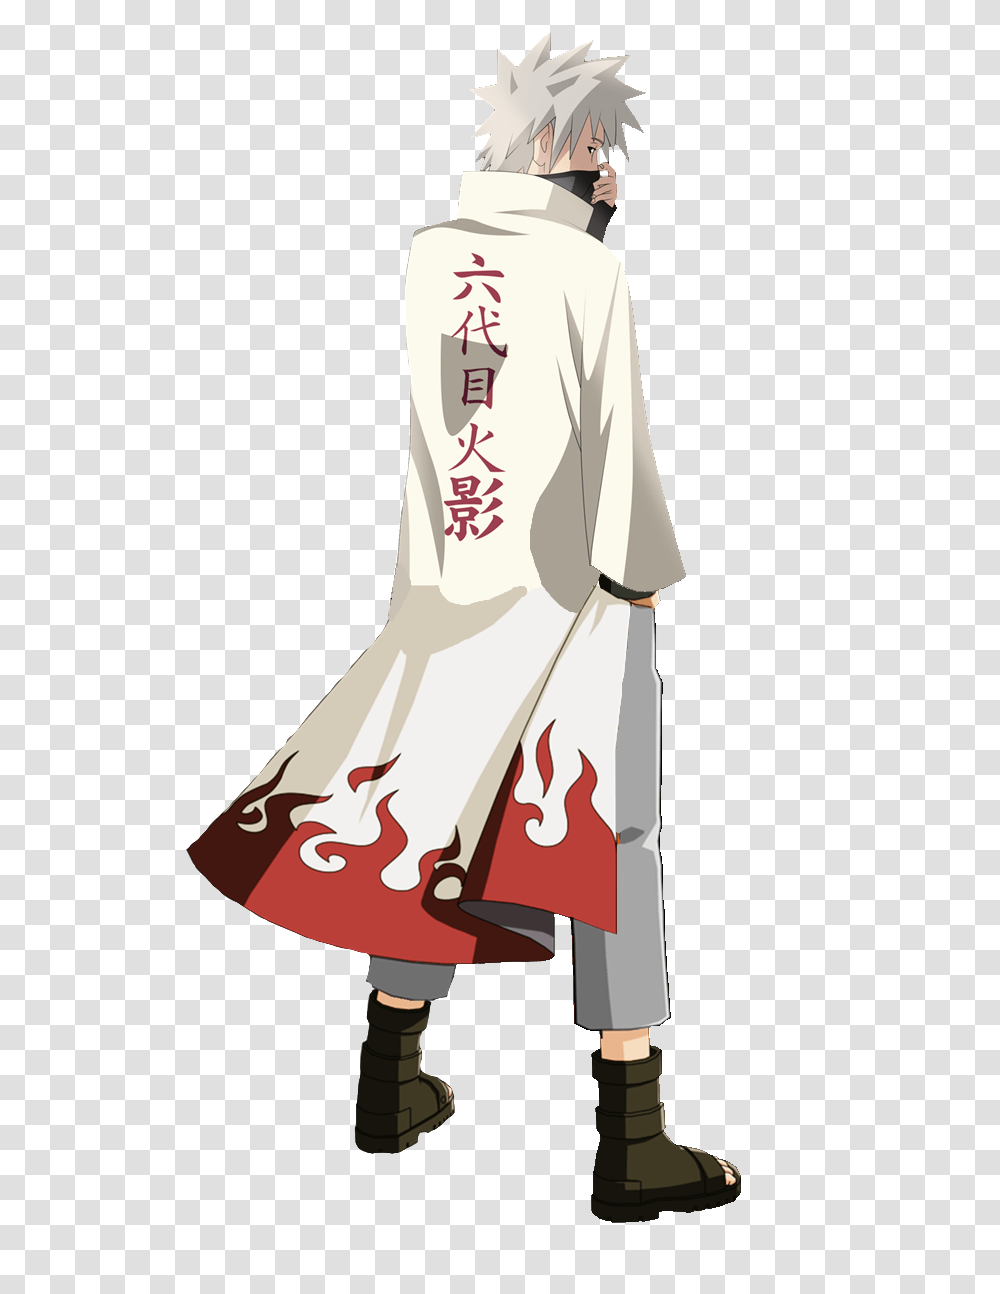 Naruto Hokage Kakashi Hokage, Person, Fashion, Robe Transparent Png